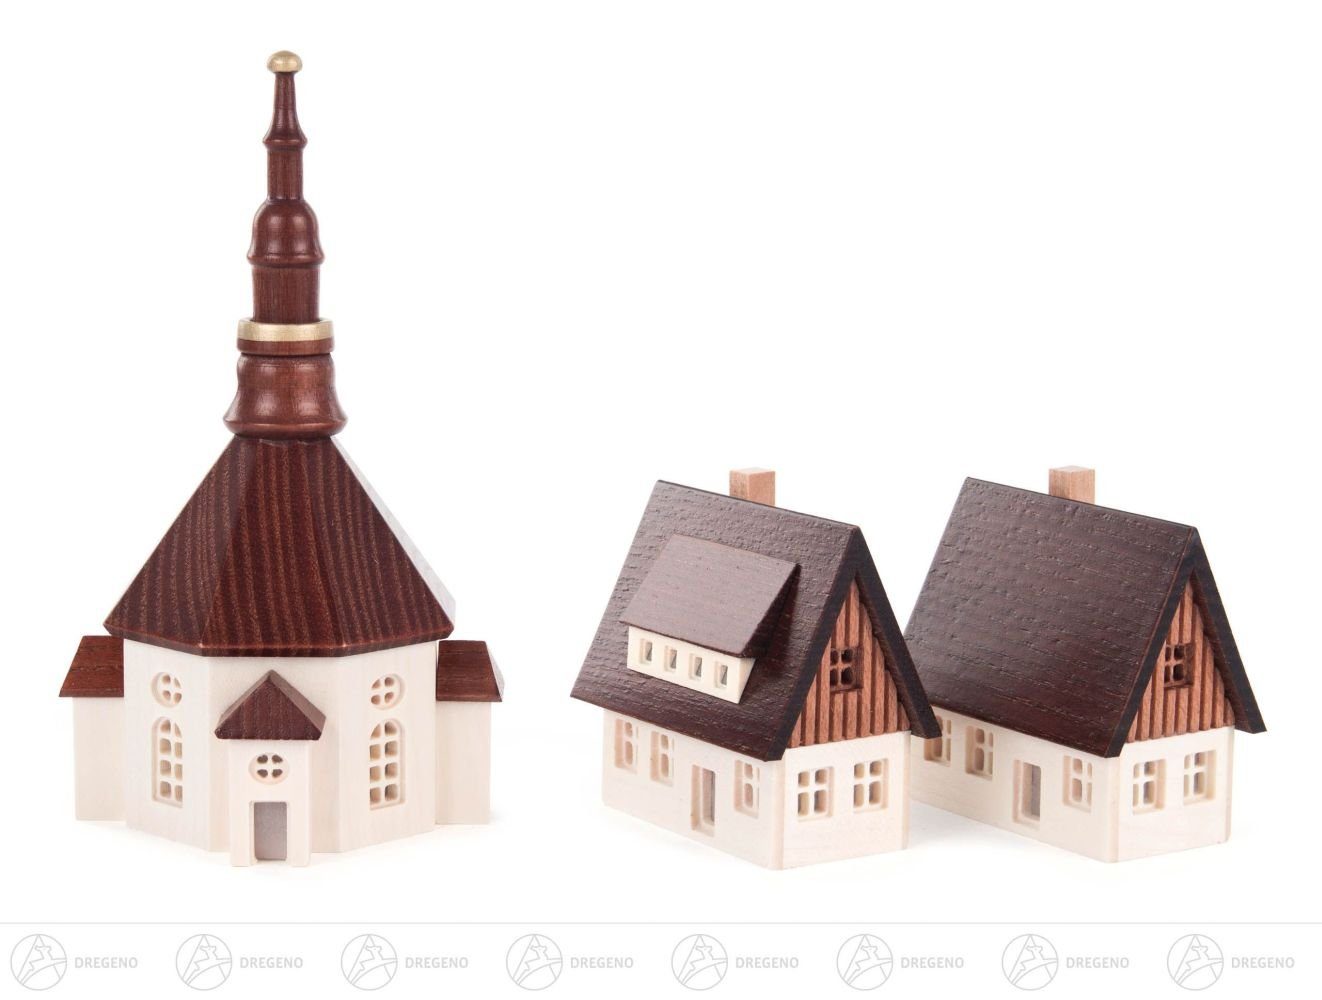 Niedrigster Preis im Land! Dregeno Erzgebirge Häuser Kirche Seiffener Kirche 2 Fenstern, mit Weihnachtsfigur und Seiffener Häuser Miniatur kl, Miniatur ausgefrästen